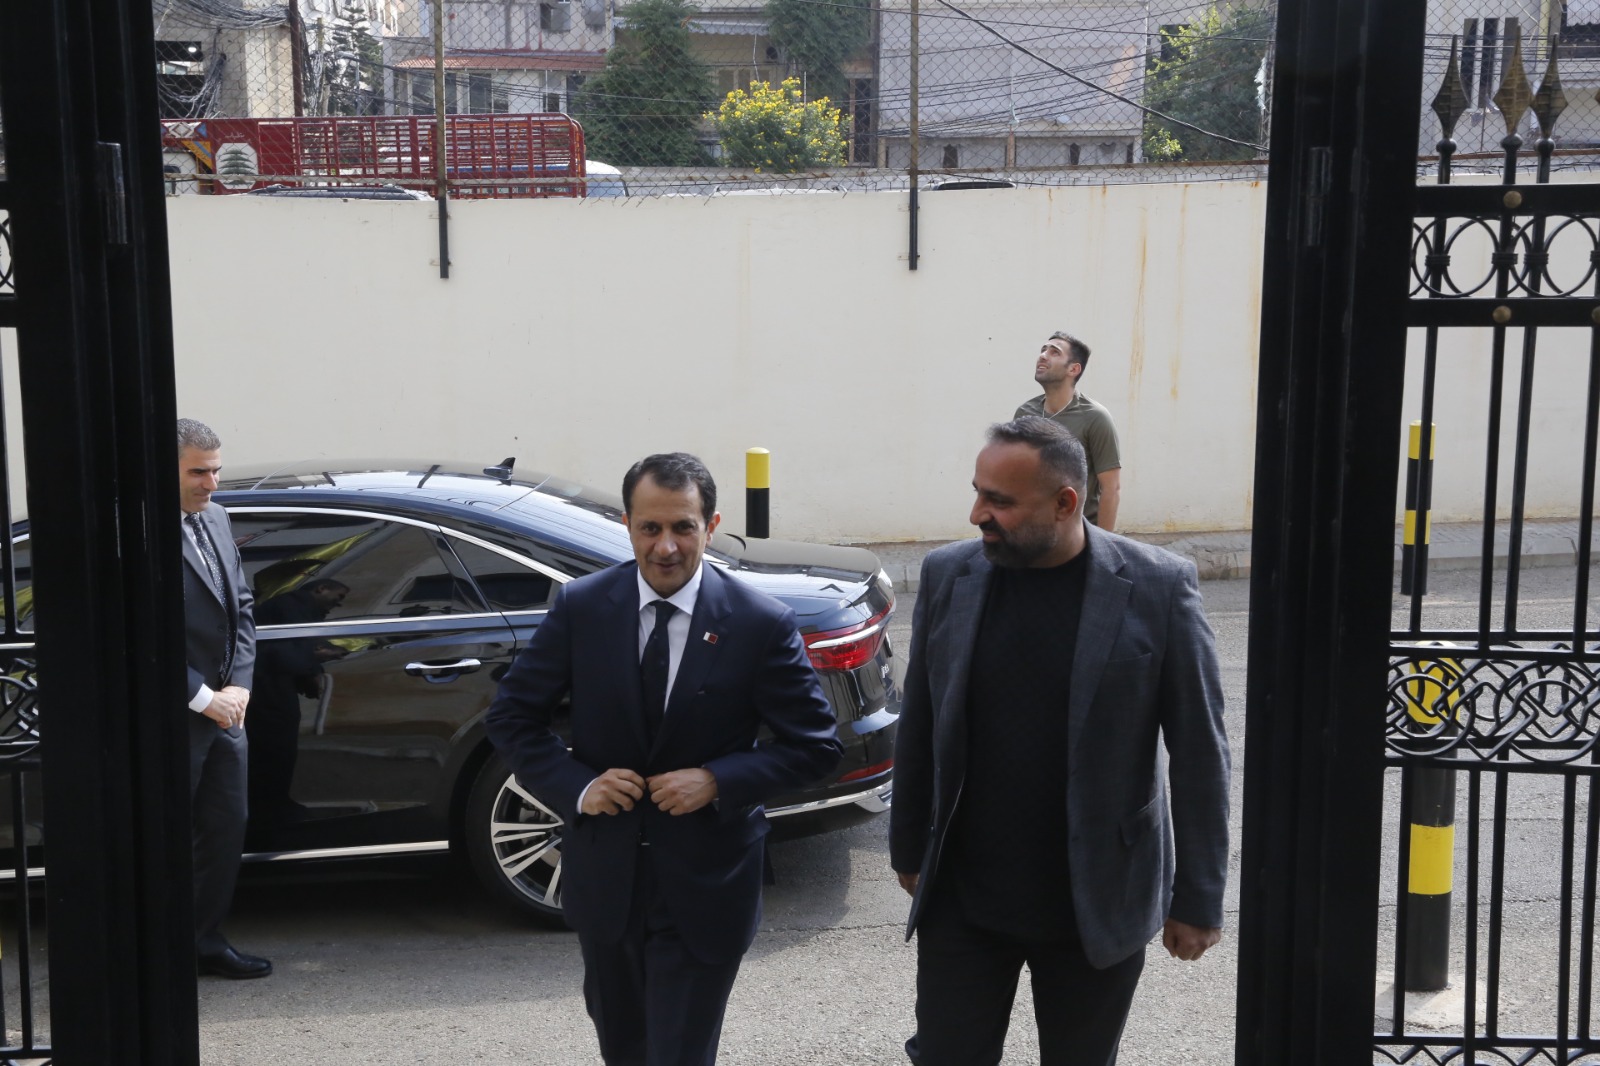 النائب رعد استقبل السفير القطري الجديد لدى لبنان في حارة حريك في زيارة تعارفية